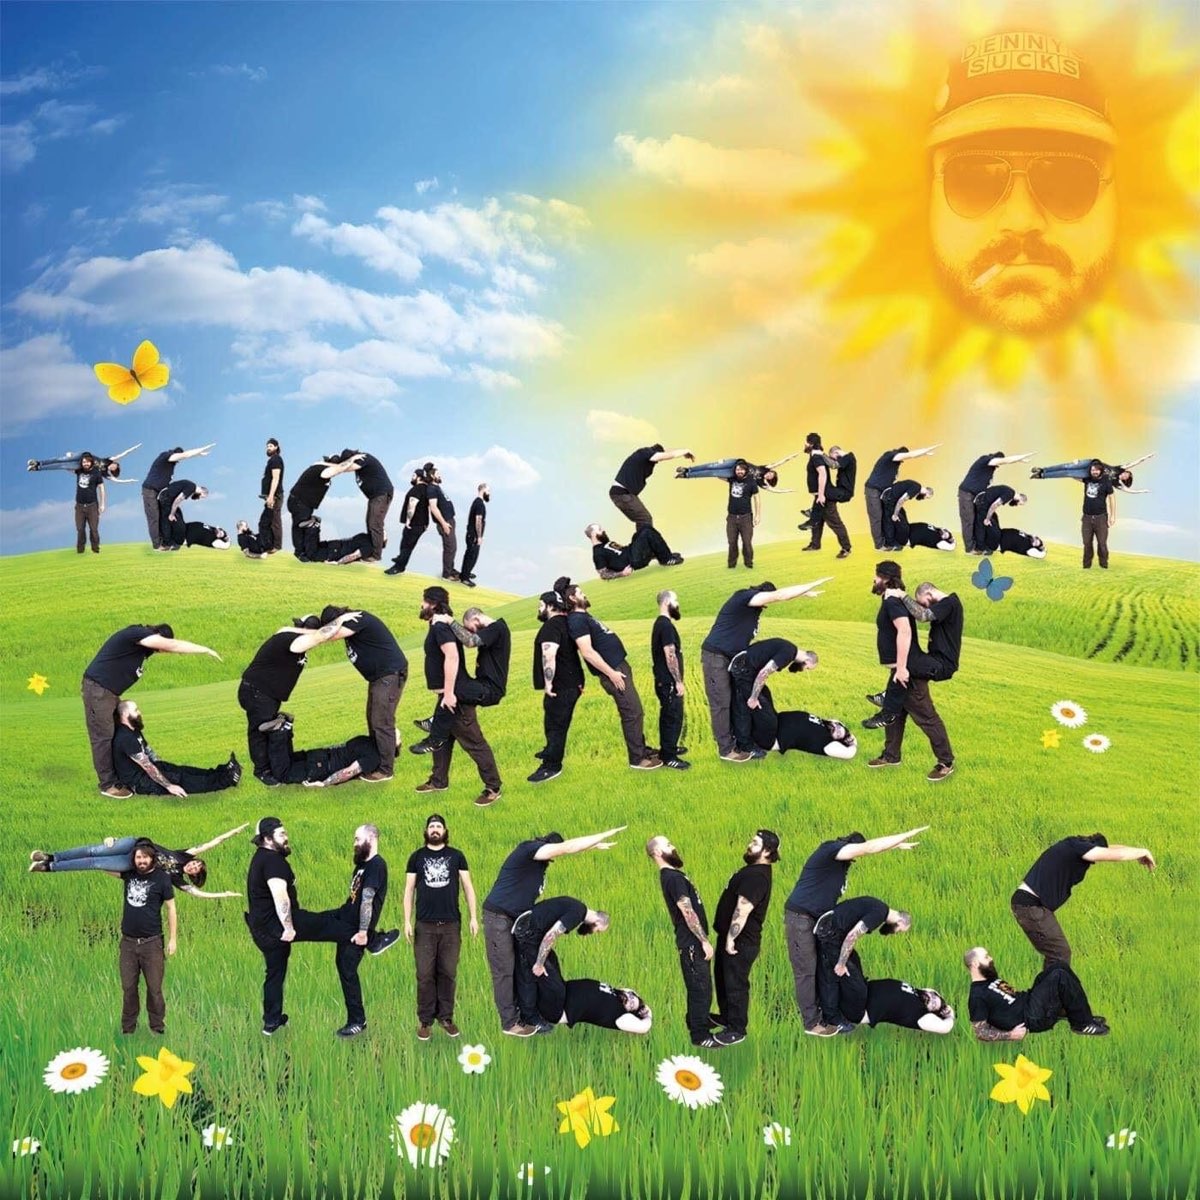 Tejon Street Corner Thieves. Tejon Street Corner Thieves Whiskey. Tejon Street Corner Thieves группа. Tejon Street Corner Thieves every last Drop. Street corner thieves